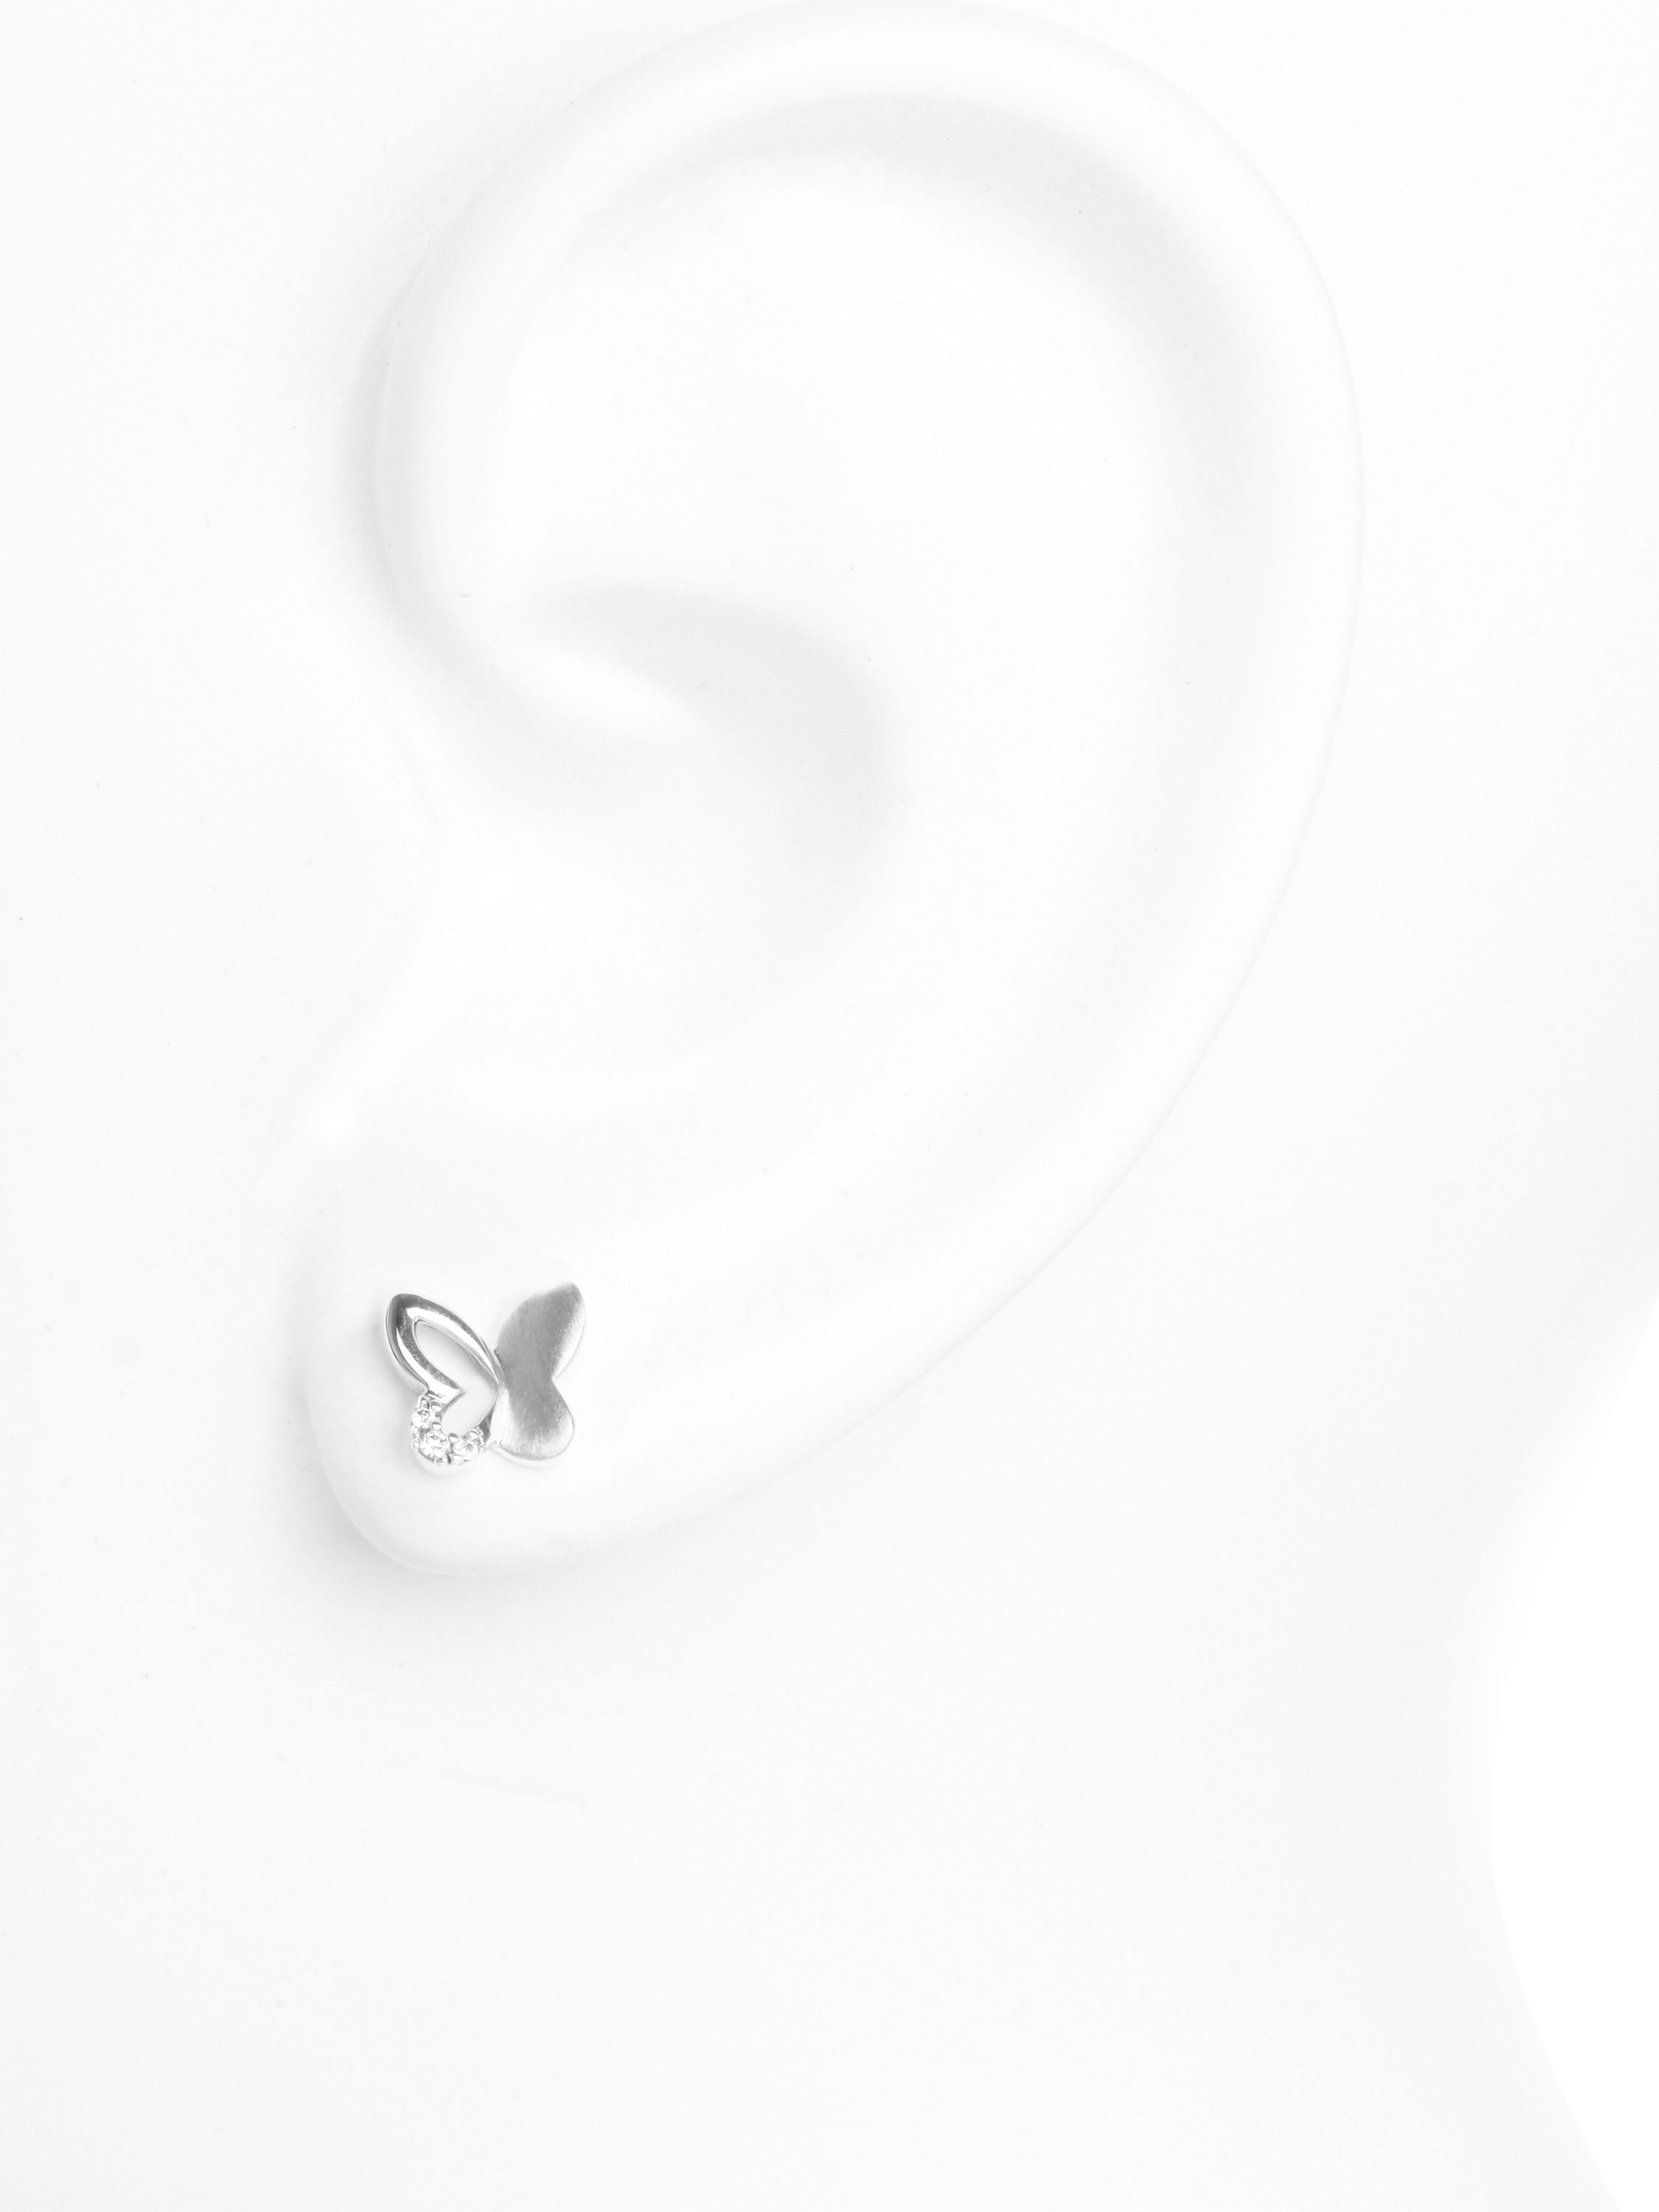 Schmetterling kaufen - Sweet Kinder Butterfly online Silber Ohrringe